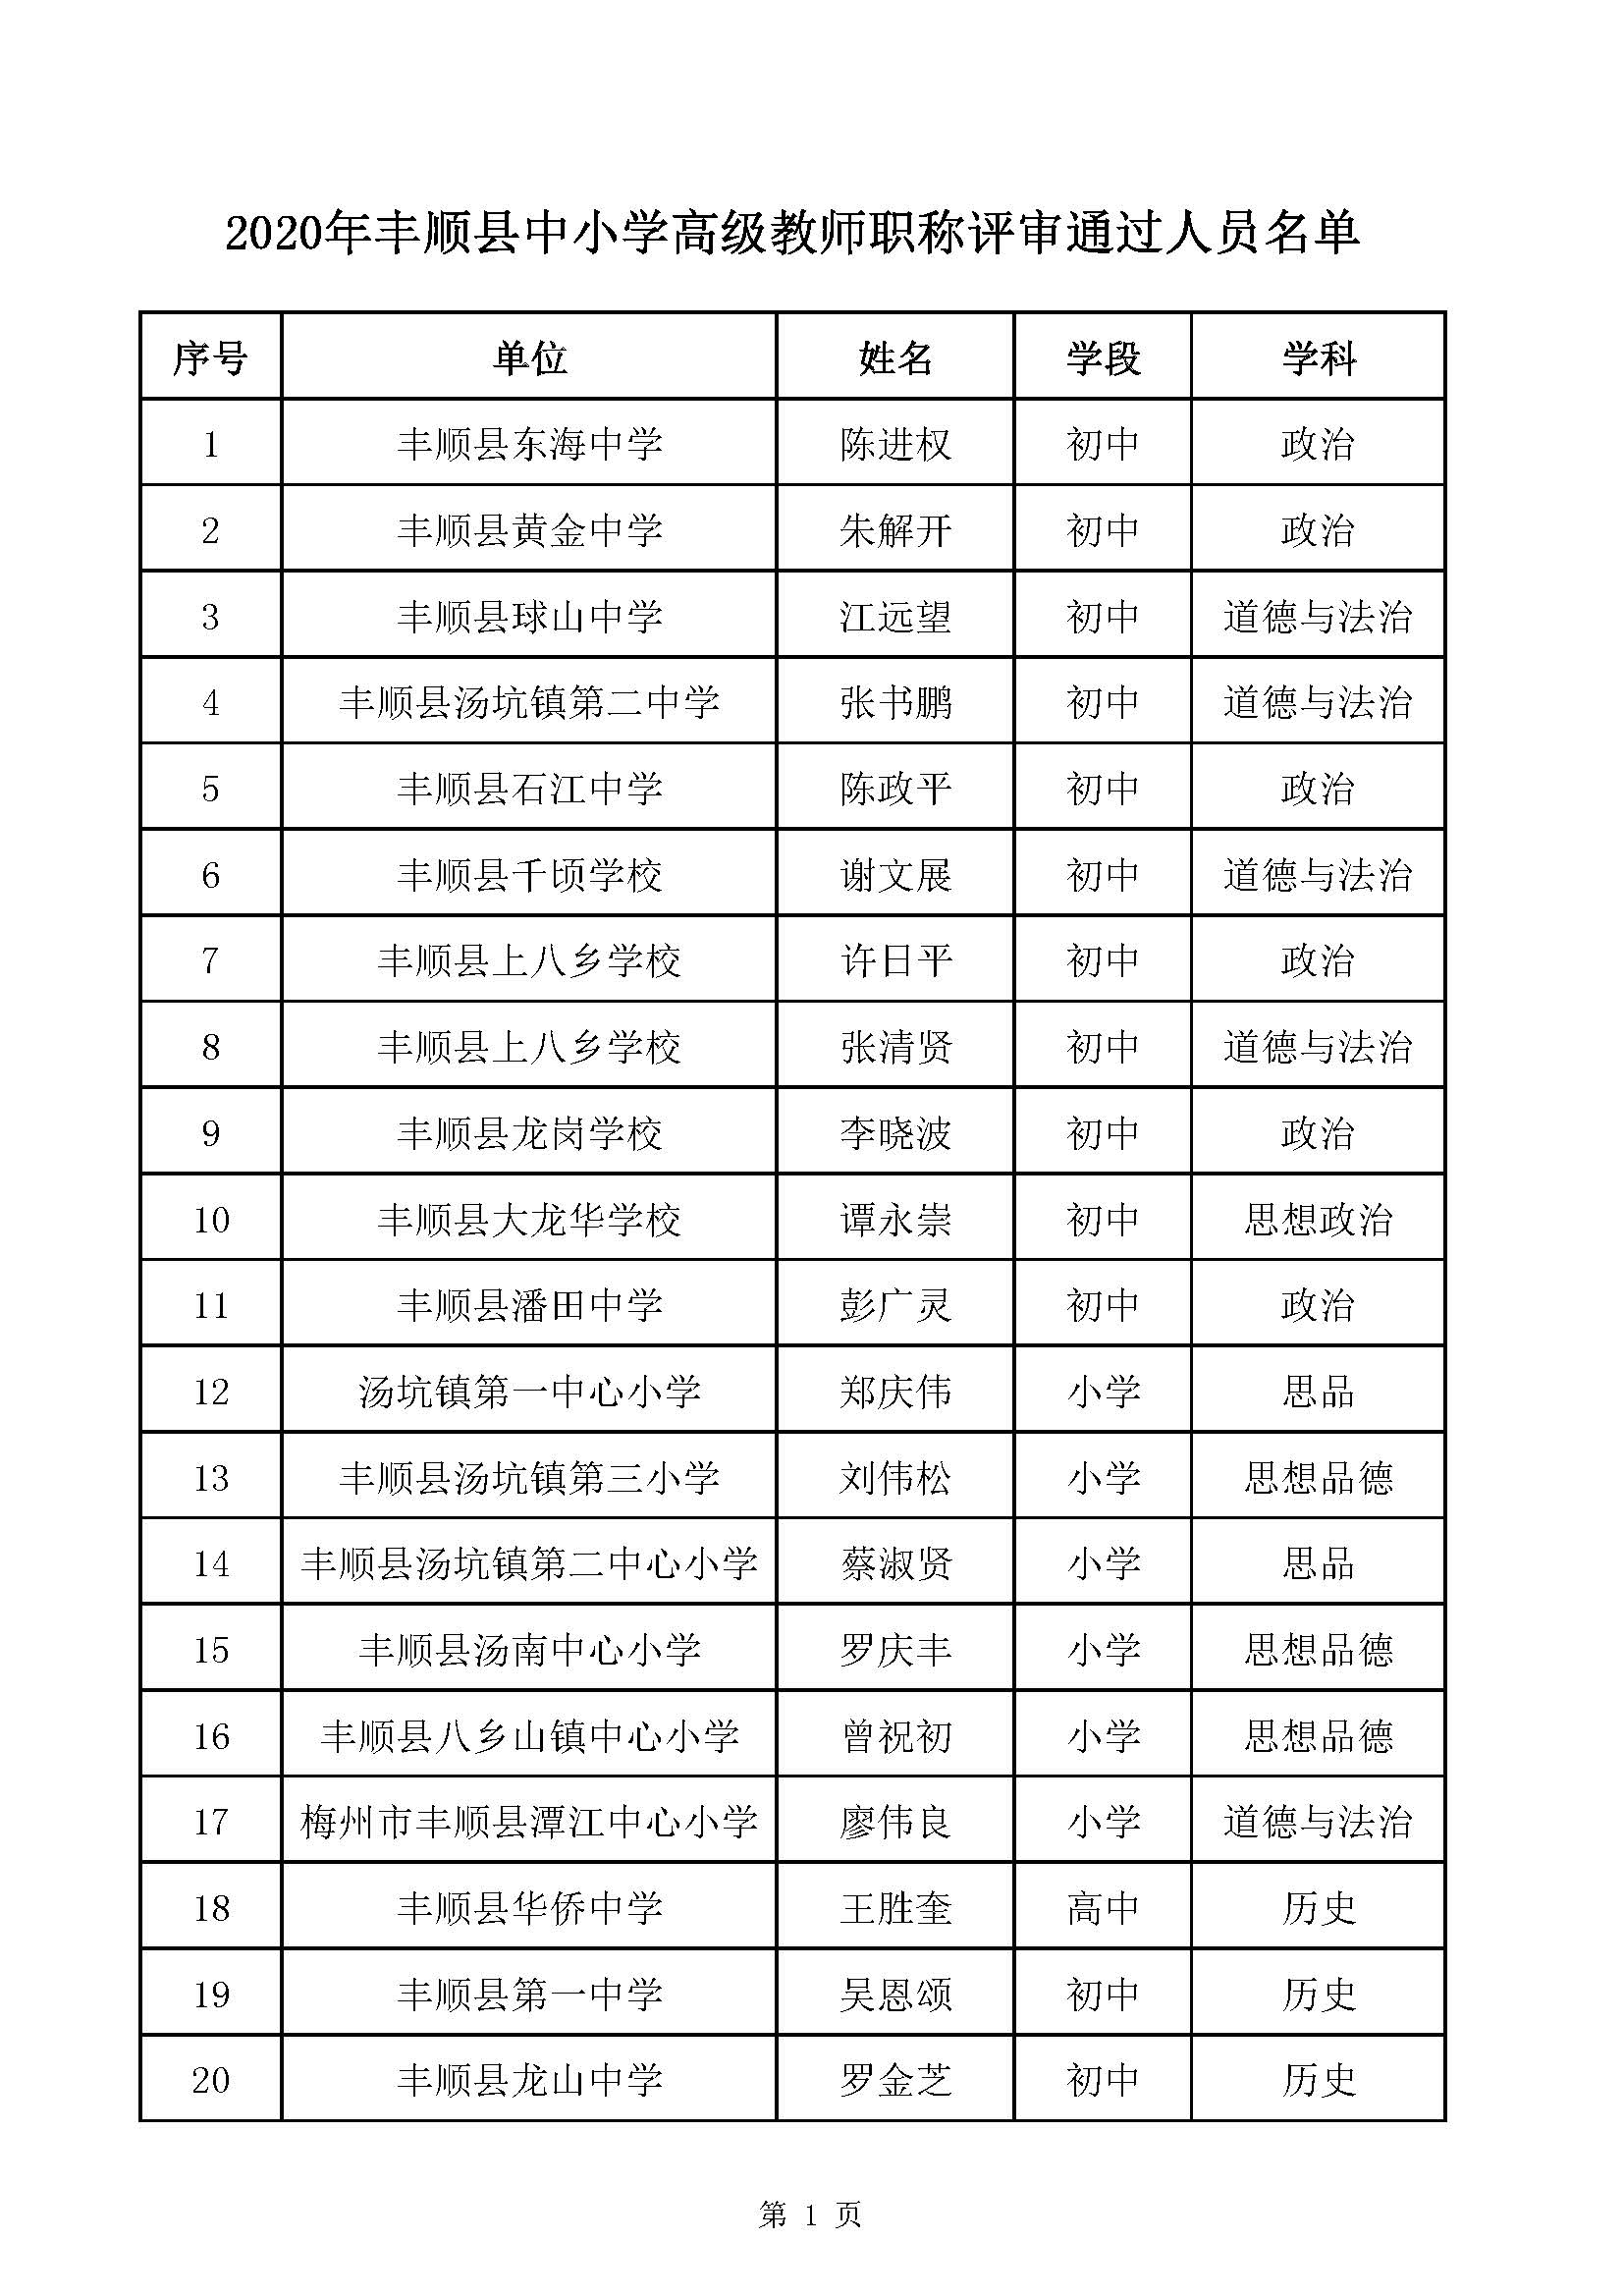 附件1：2020年梅州市中小学高级教师职称评审通过人员名单（丰顺县）_页面_01.jpg